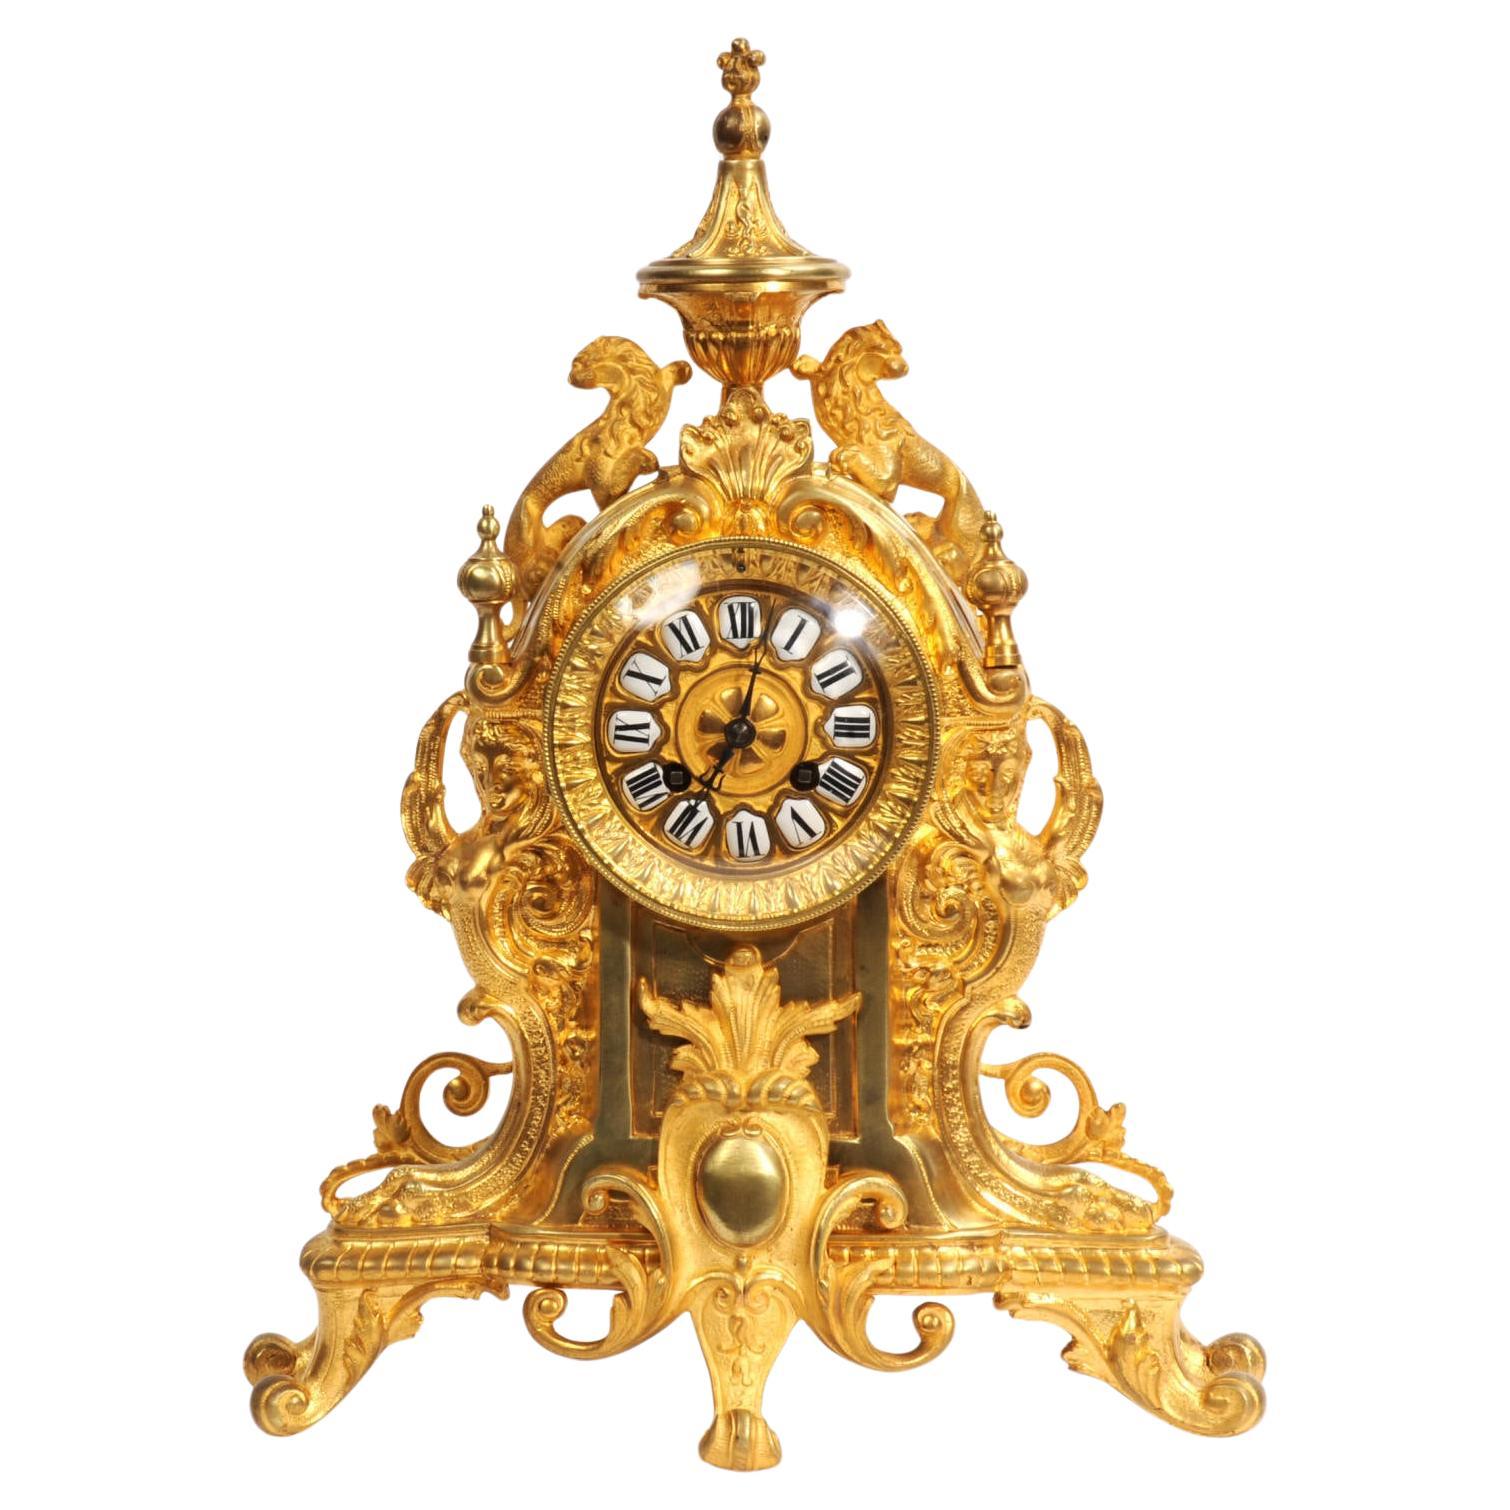 Horloge française ancienne en bronze doré - Lions Rampant - surhaussée et testée